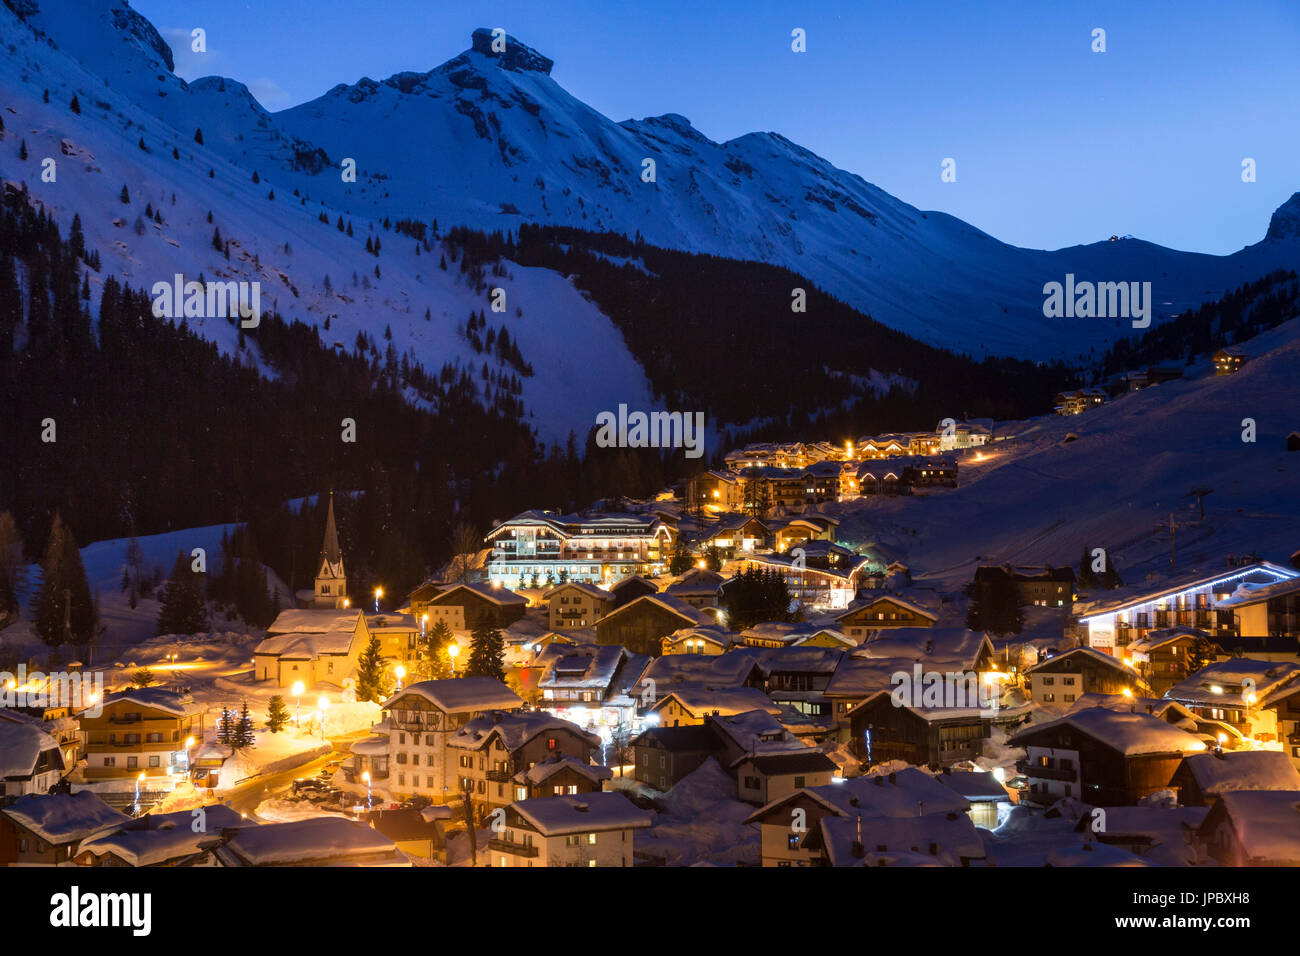 Licht der Dämmerung auf der alpinen Dorf von Arabba, umrahmt von schneebedeckten Gipfeln Dolomiten-Belluno Provinz Venetien Italien Europa Stockfoto